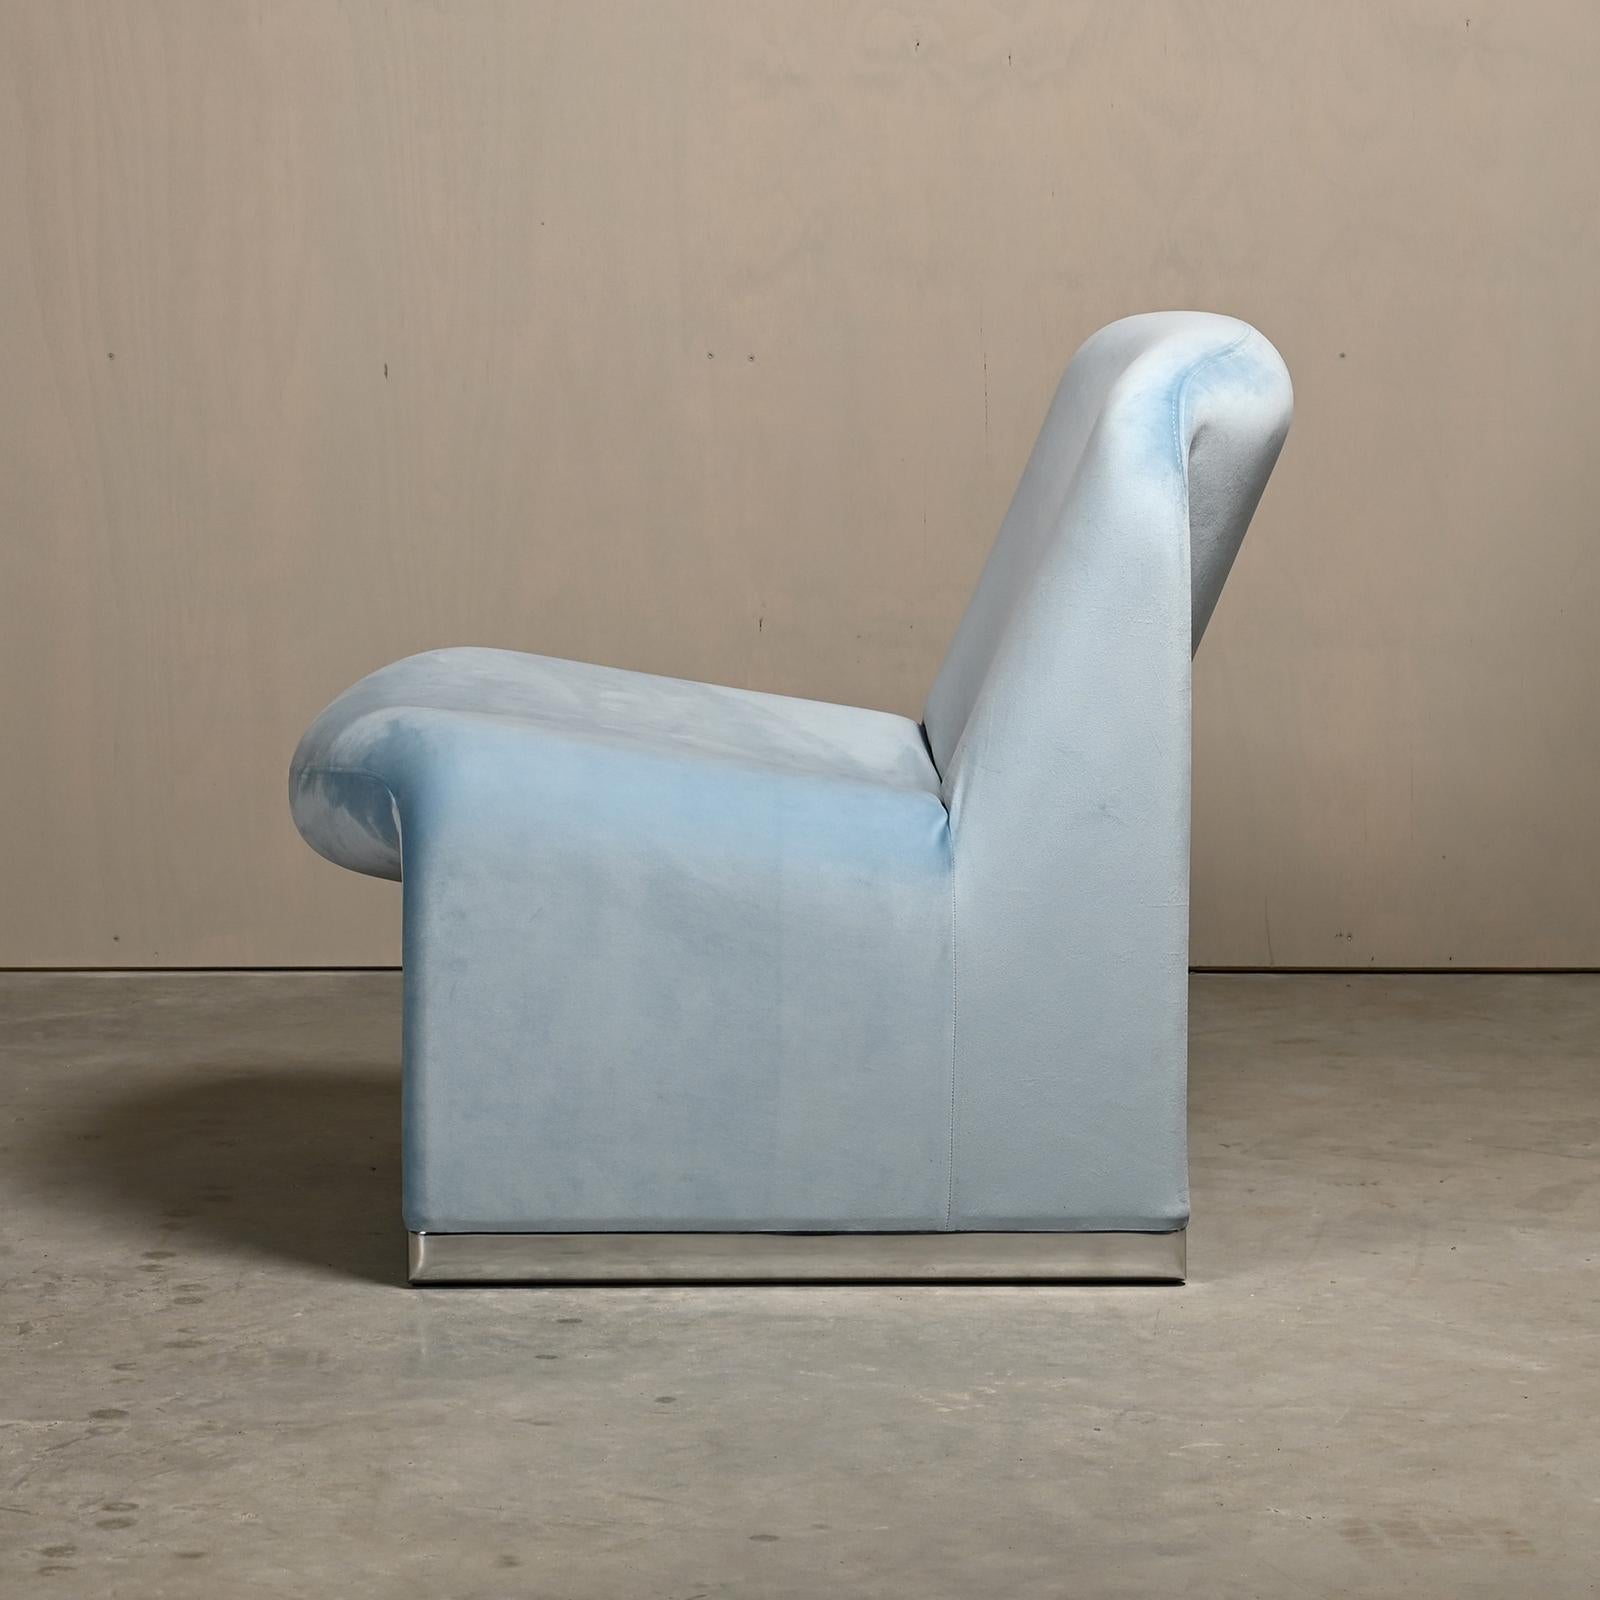 Der ikonische Sessel Alky wurde in den sechziger Jahren von Giancarlo Piretti für Anonima Castelli, Italien, entworfen. Die Form des Stuhls ist mit Schaumstoff direkt auf einen Metallrahmen mit elastischen Bändern gedruckt, um Komfort und Stabilität